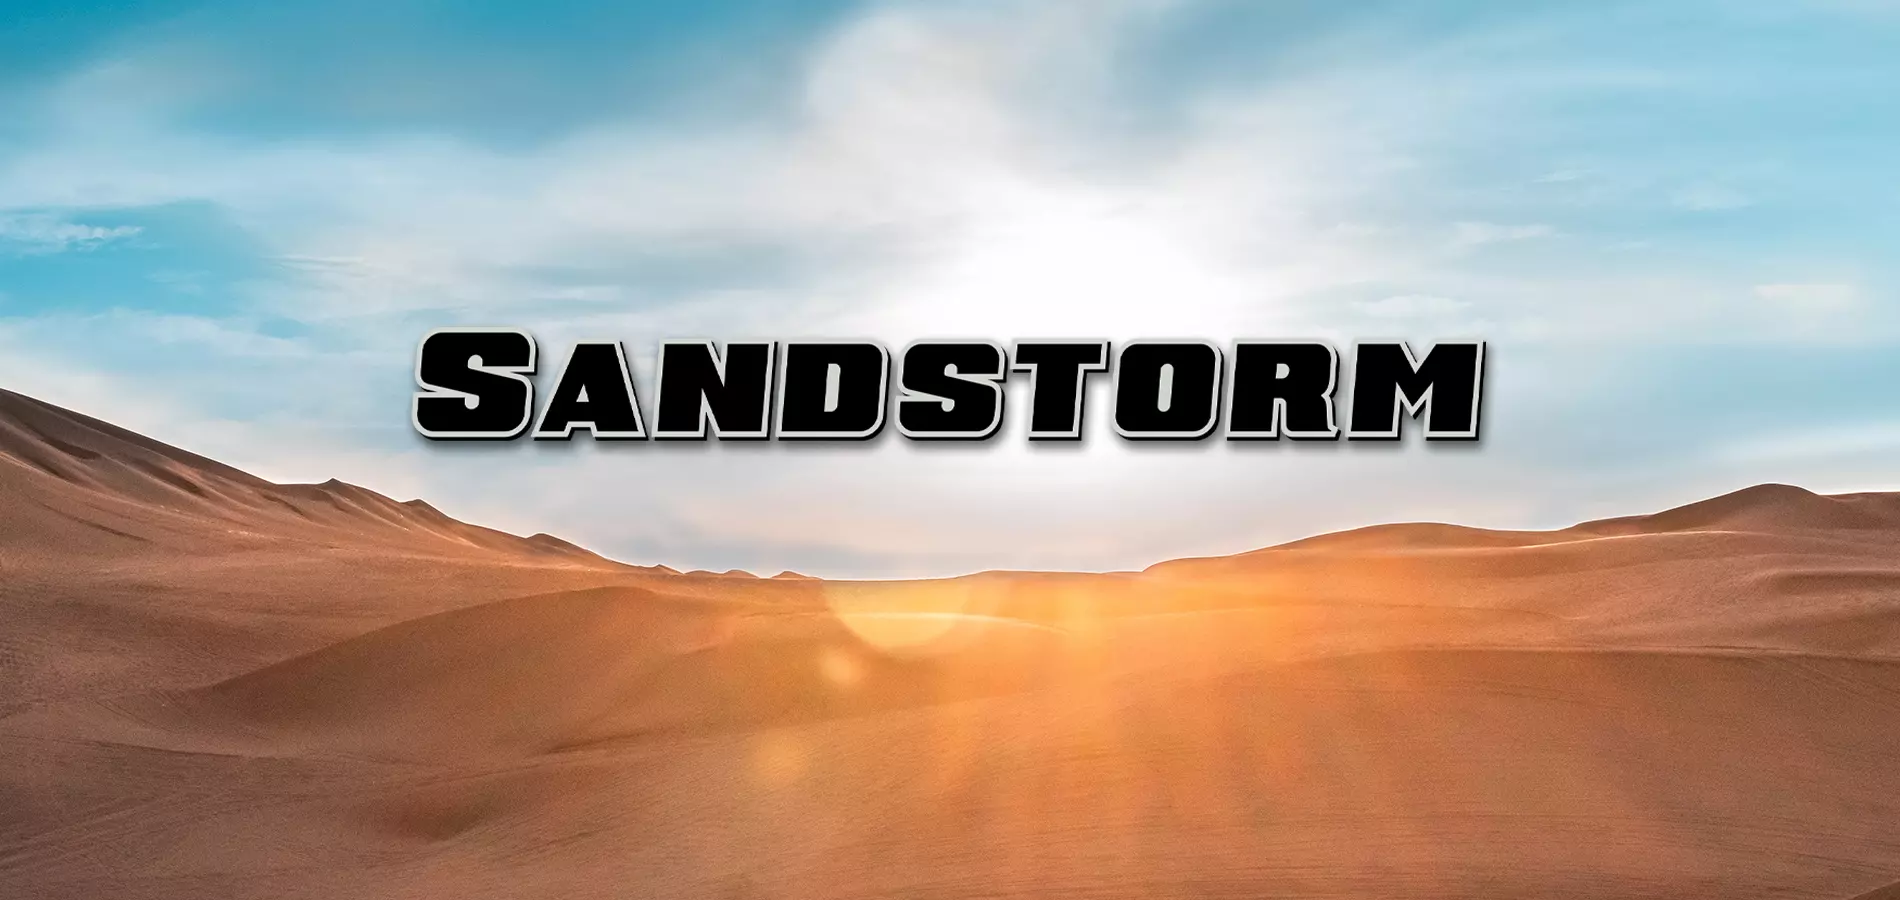 Sandstorm Forest River Rv Manufacturer Of Travel Trailers